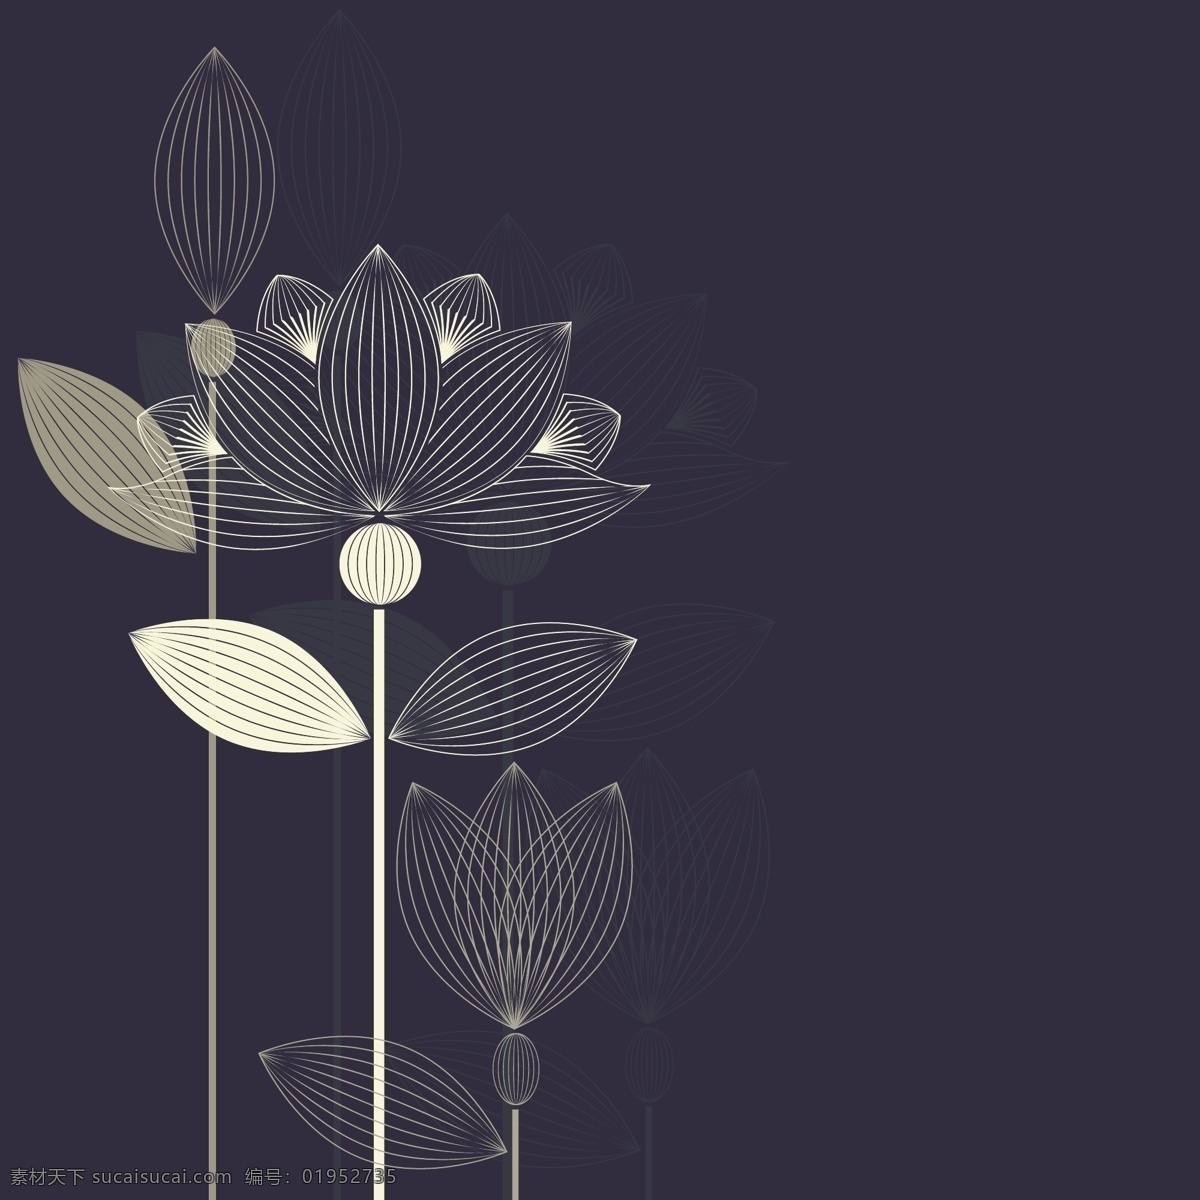 时尚 线条 创意 荷花 插画 抽象 莲花 叶子 植物